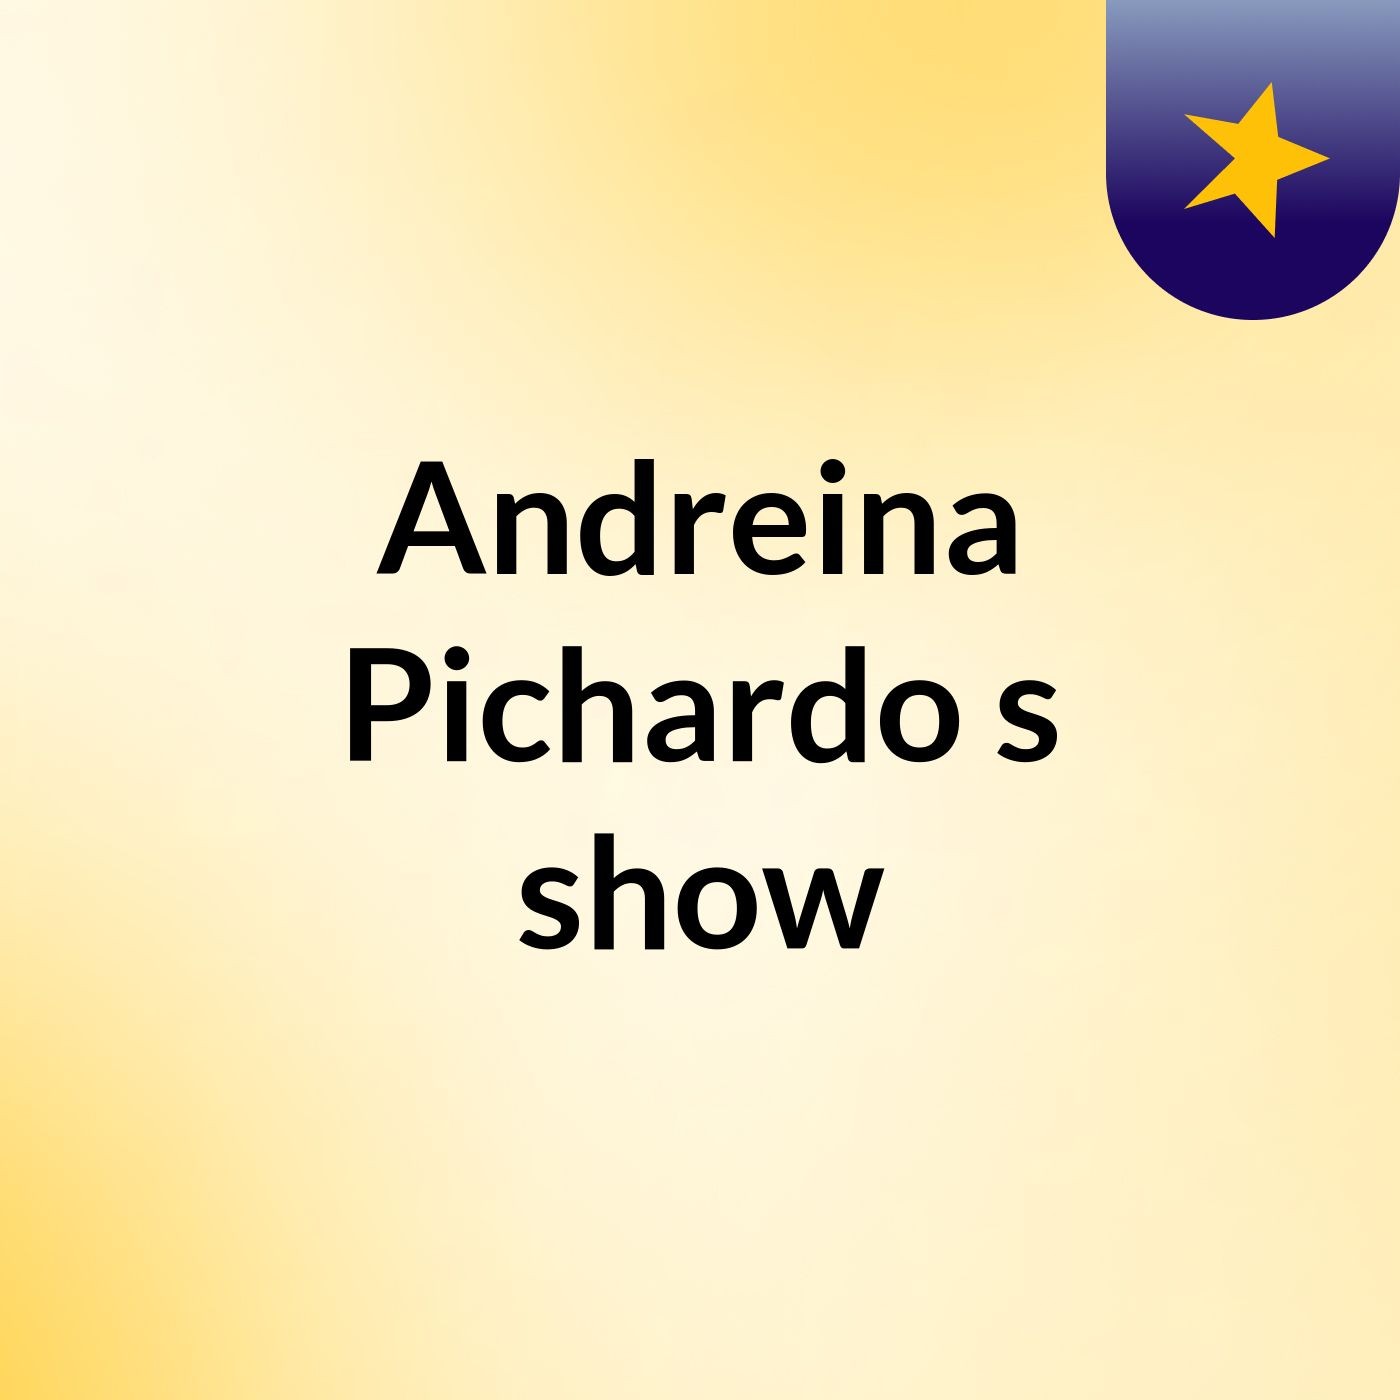 Andreina Pichardo's show